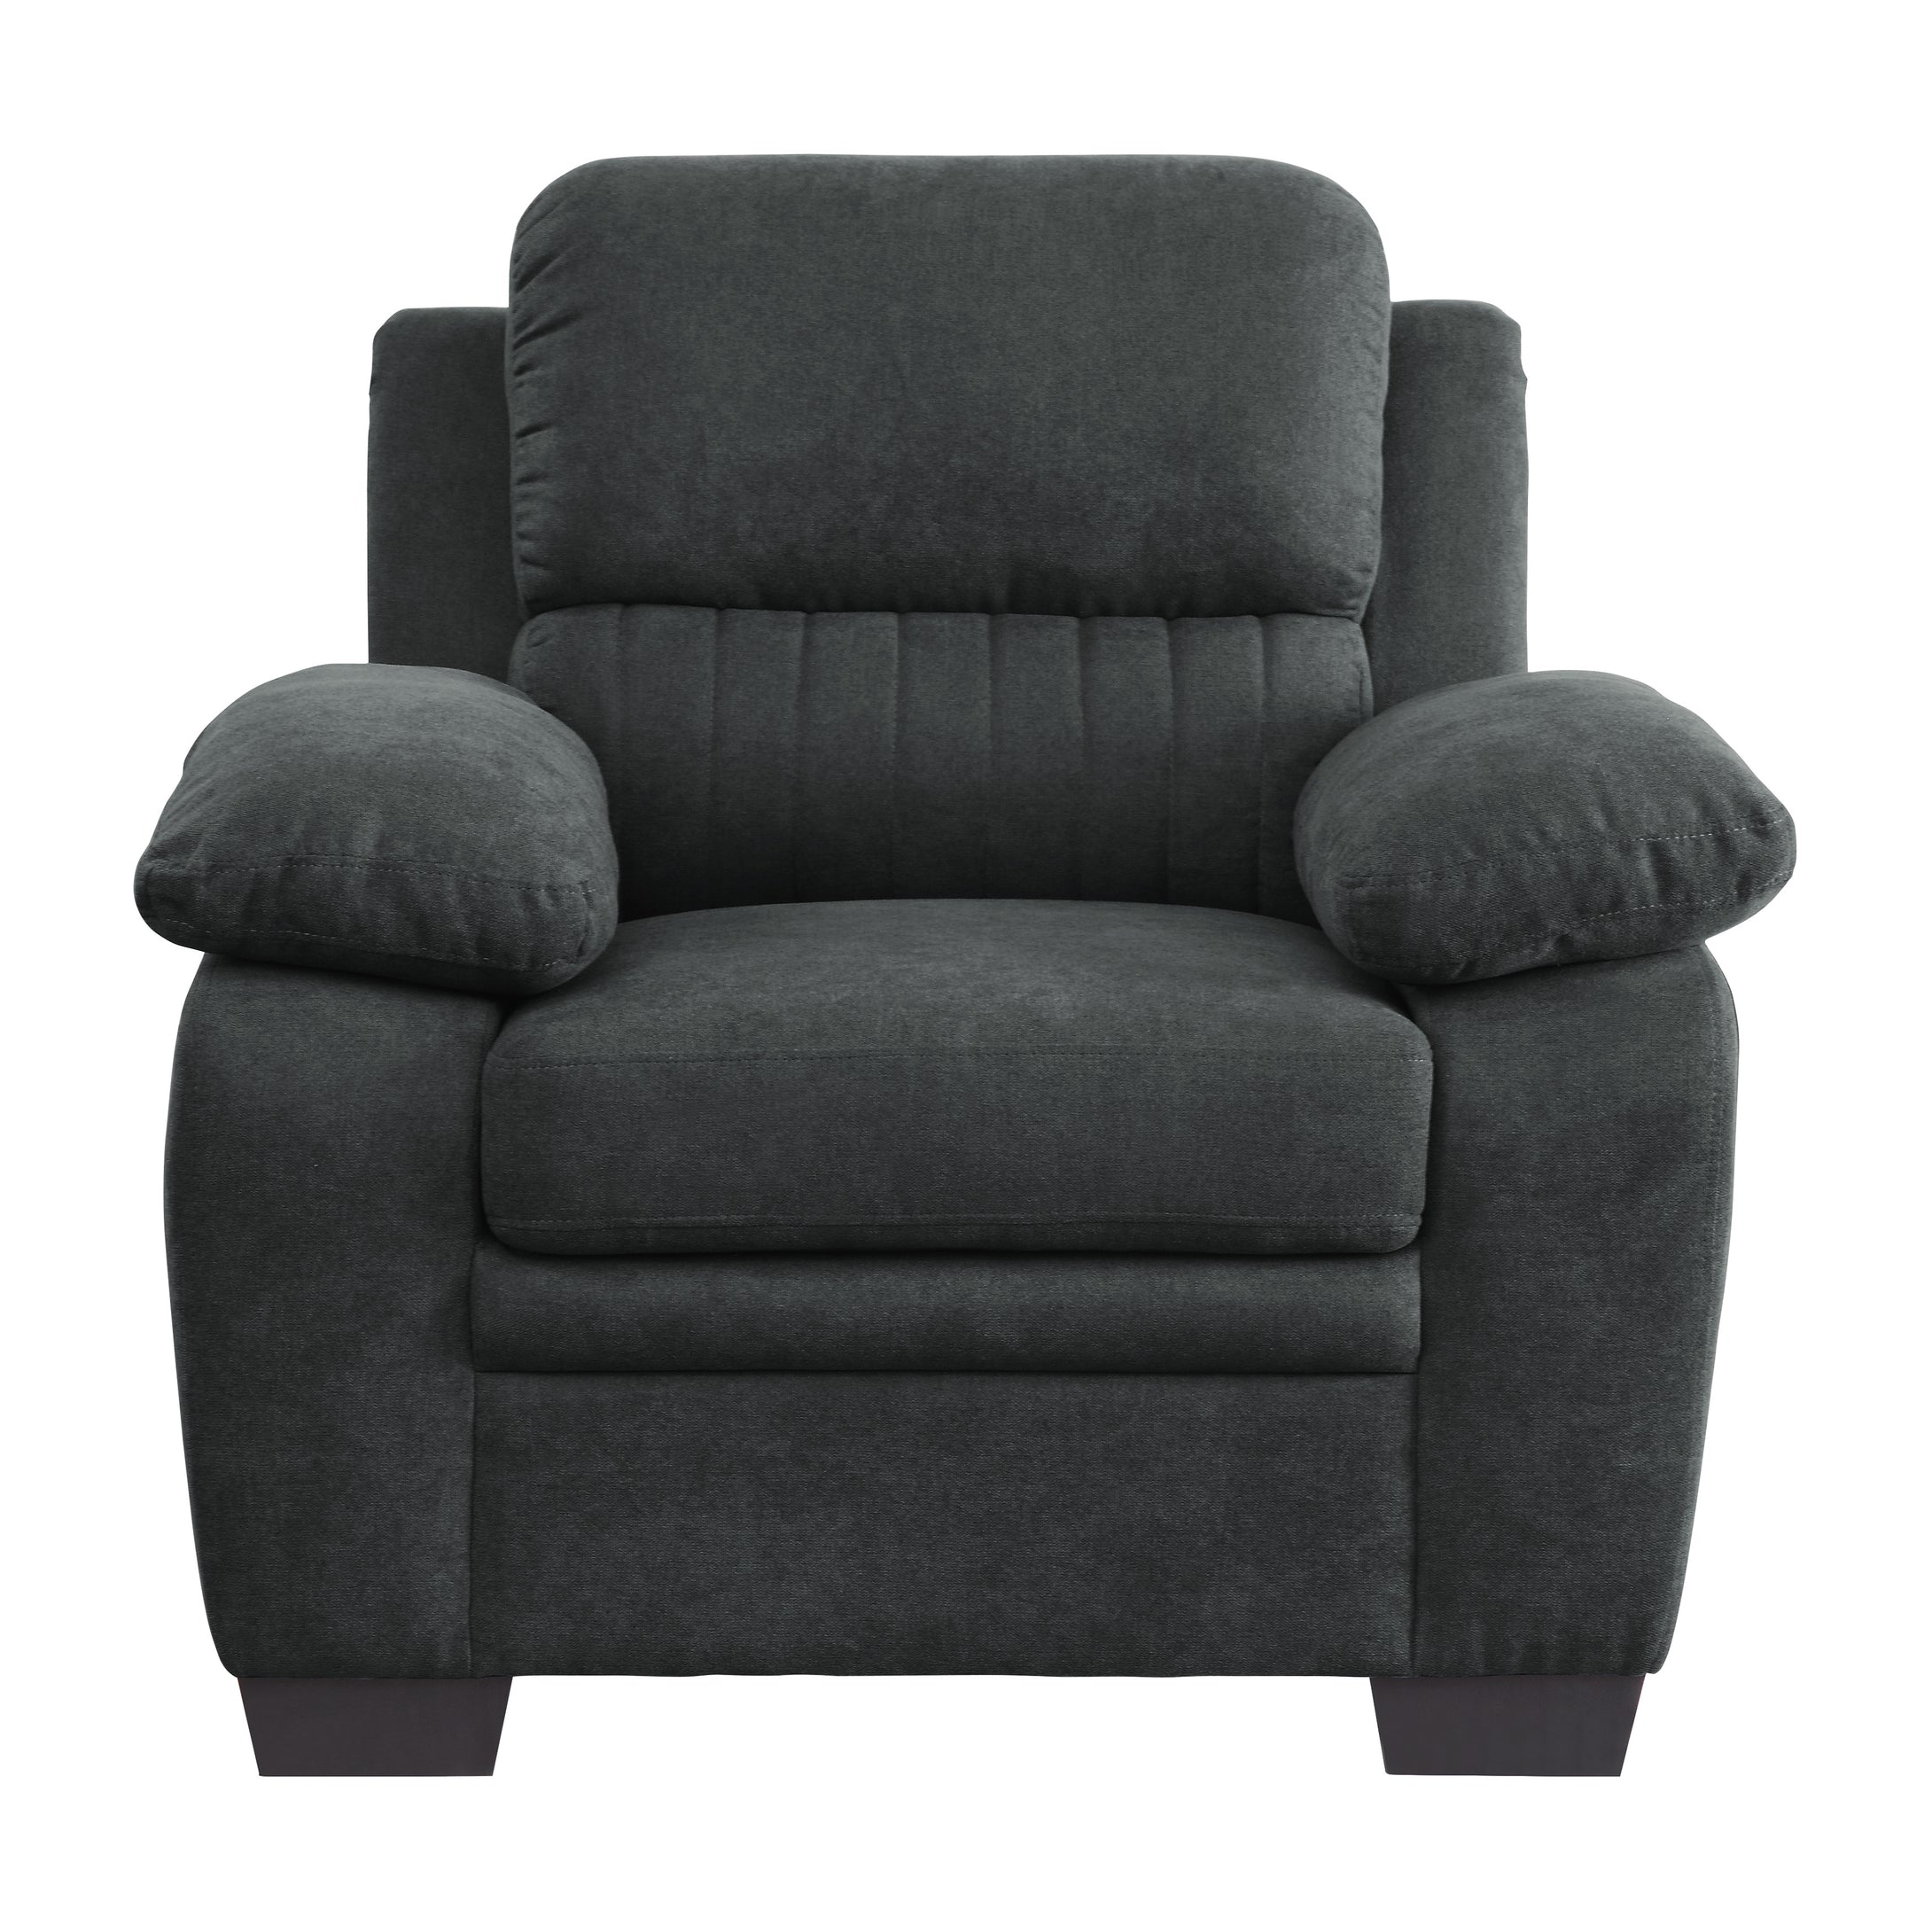 9333DG-1 Chair